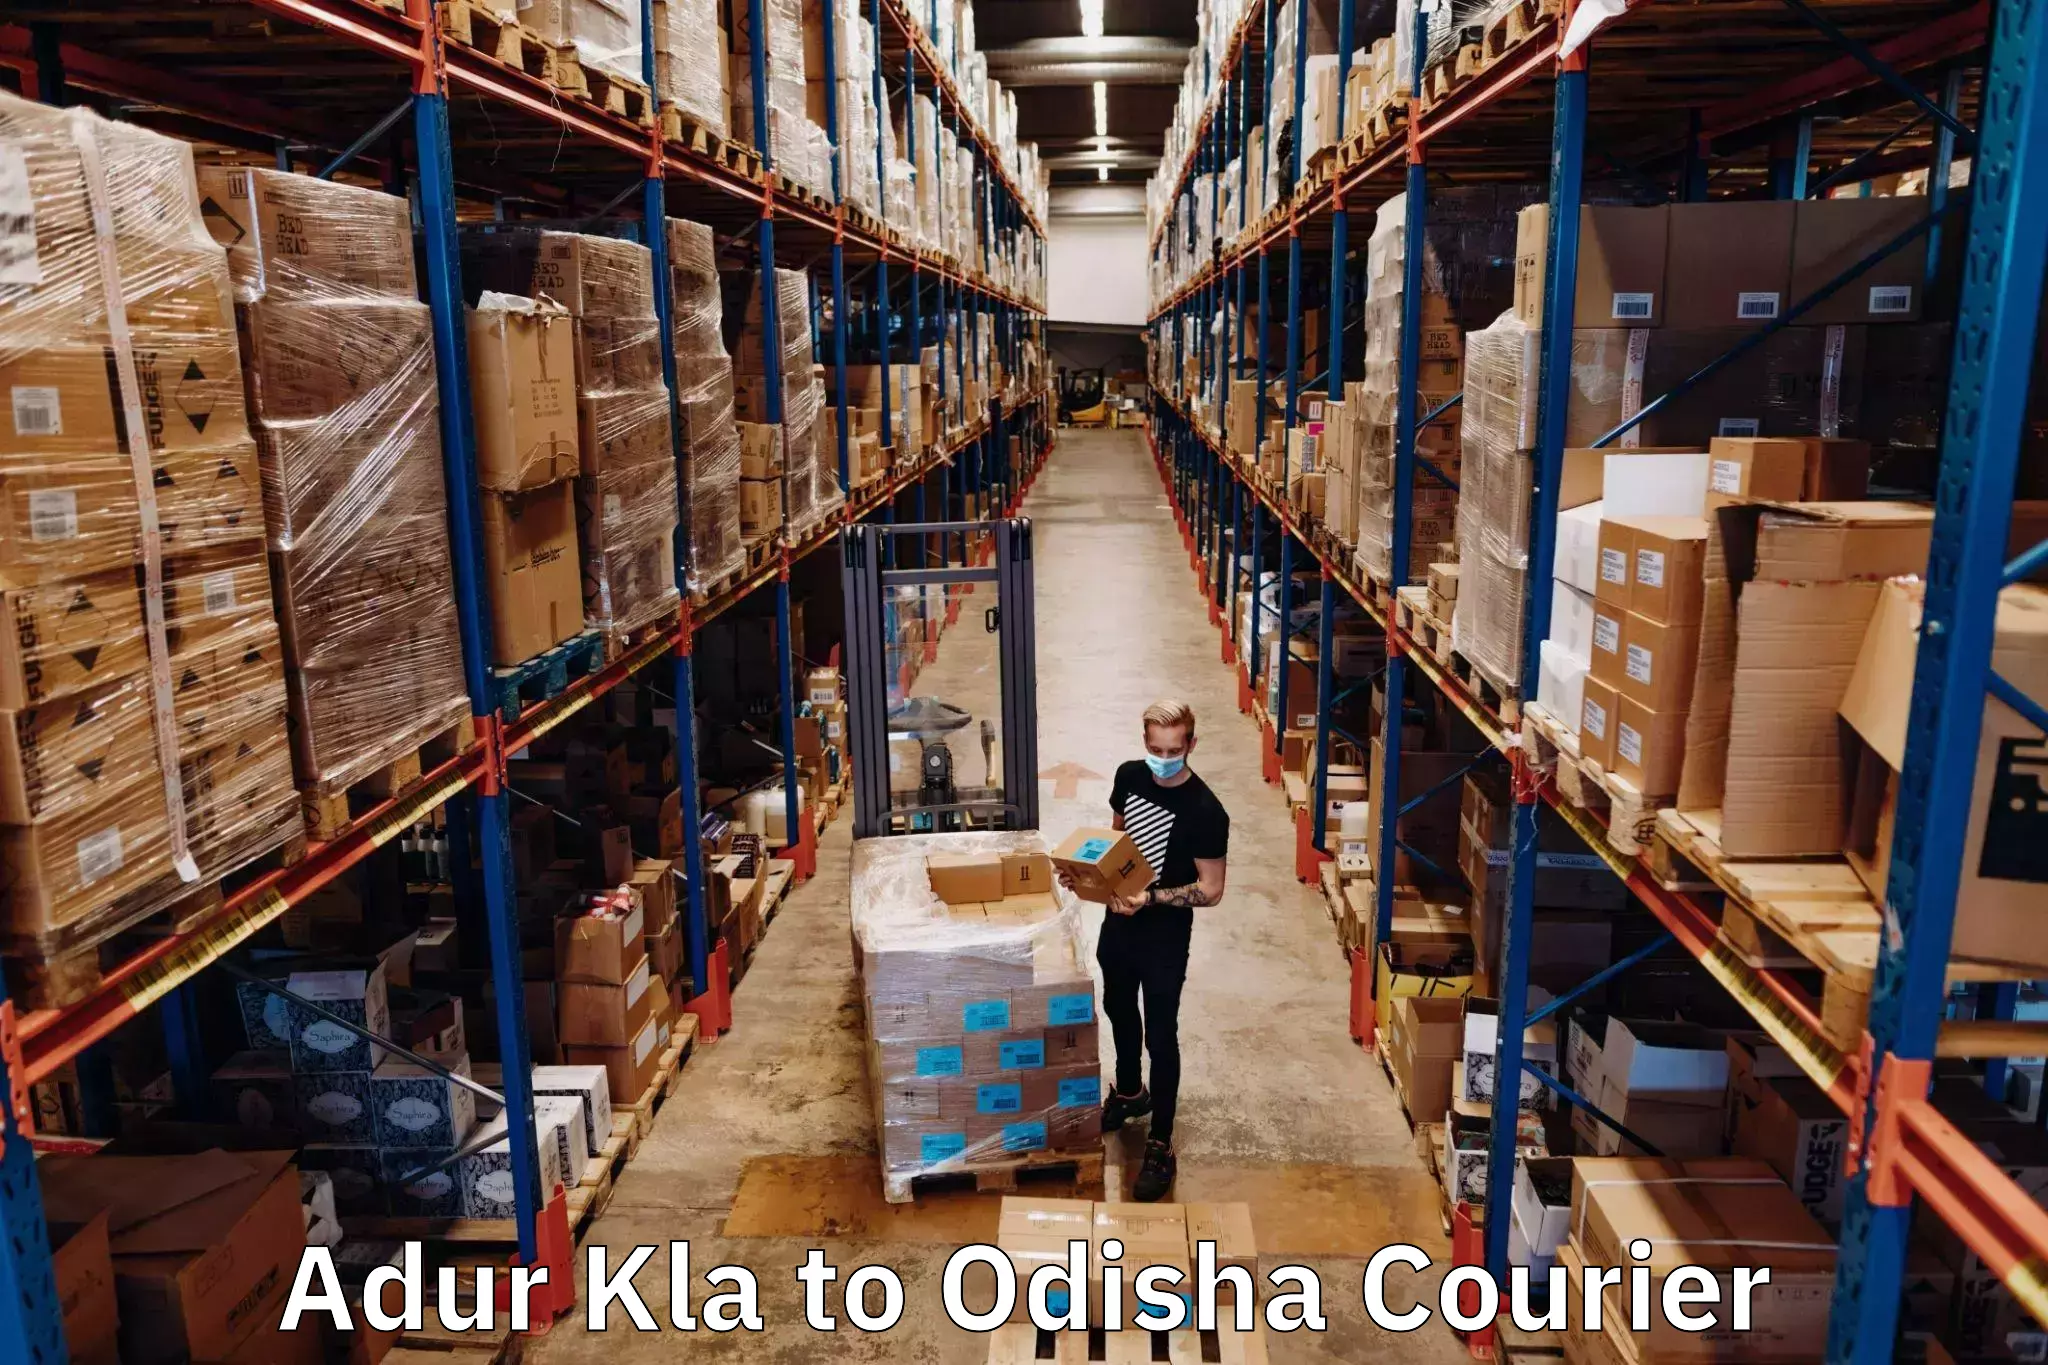 Global freight services Adur Kla to Balangir